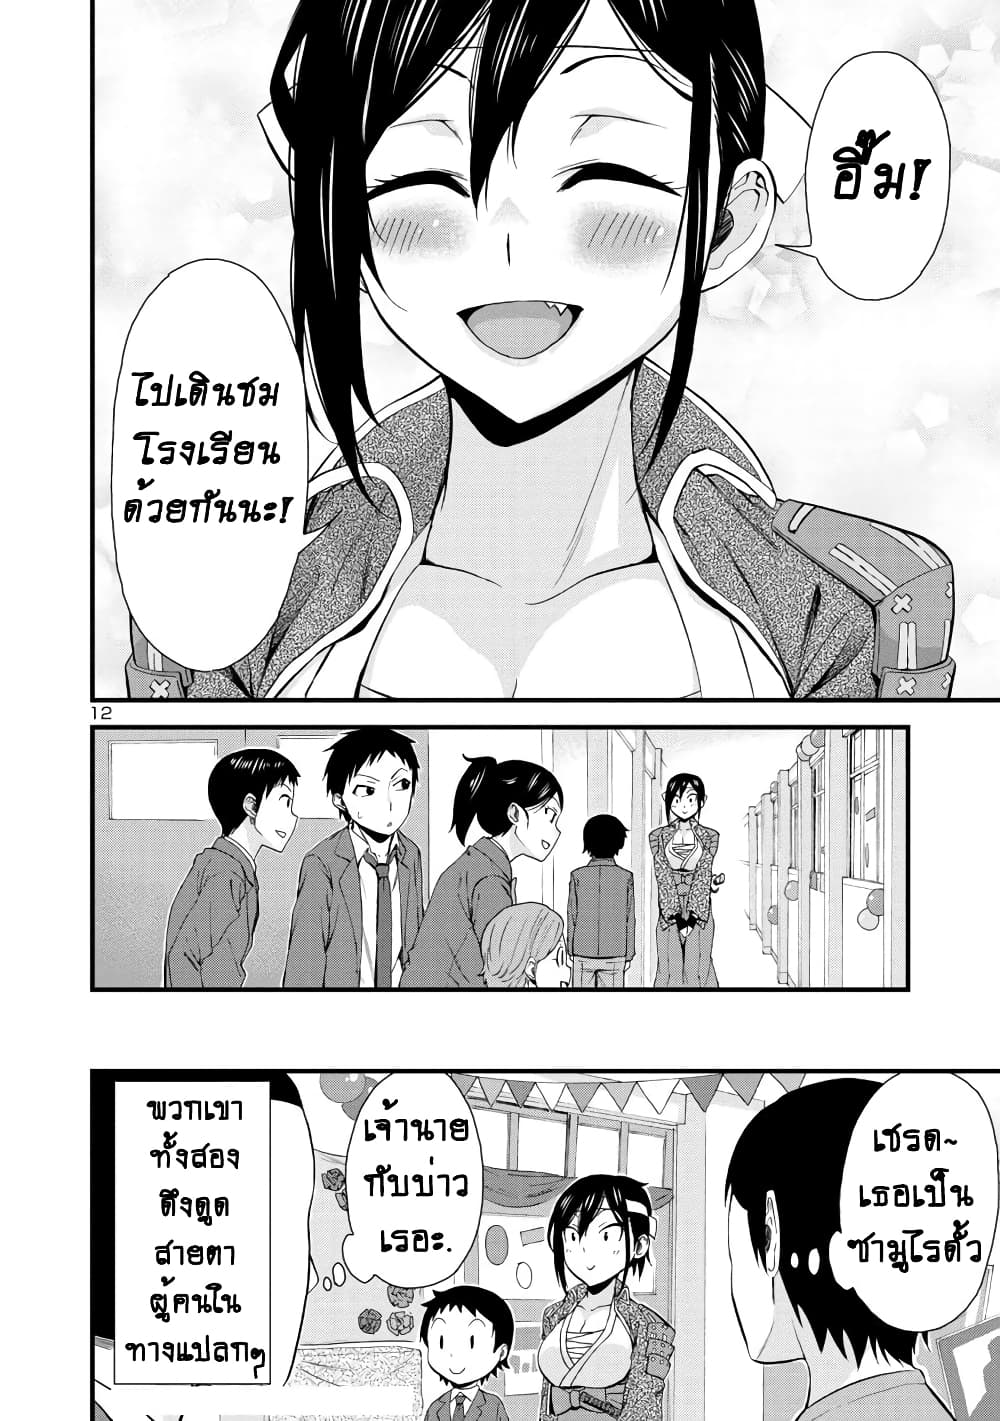 Hitomi-chan Is Shy With Strangers วันๆของน้องฮิโตมิก็เป็นแบบนี้แหล่ะ 33-33